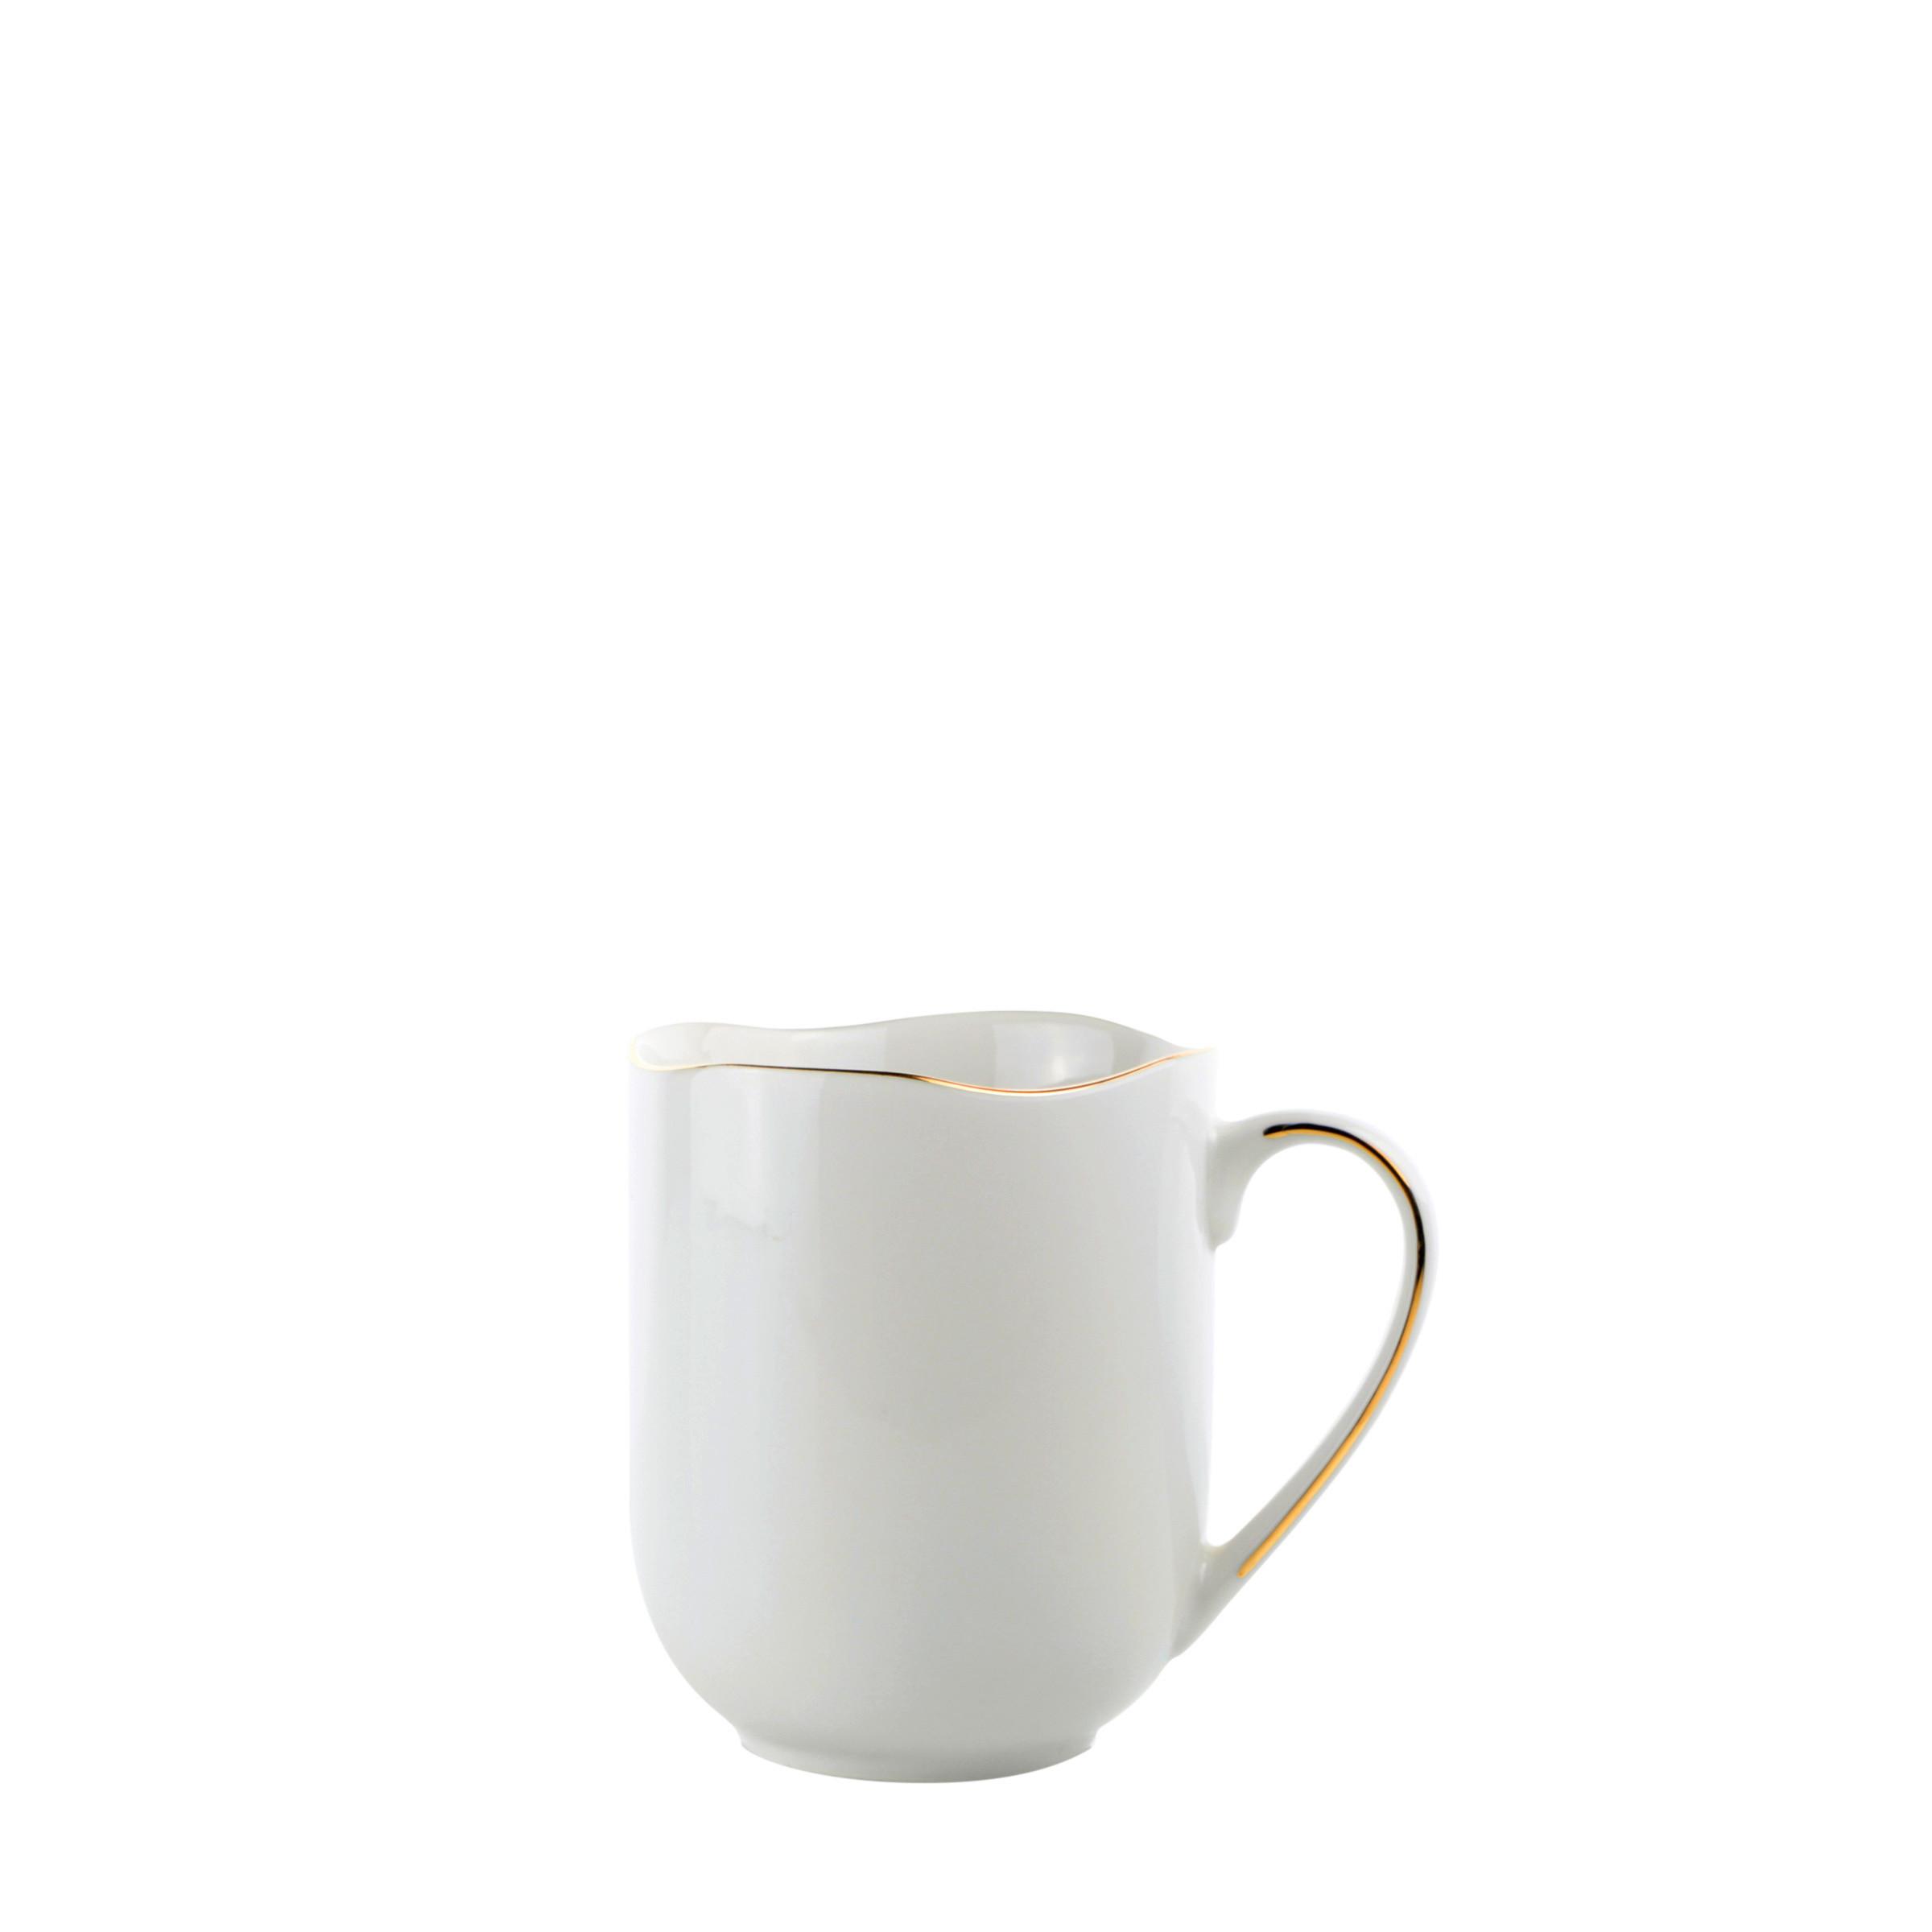 Velika Šalica 350ml. Onix - bijela/zlatne boje, Modern, keramika (350ml) - Premium Living